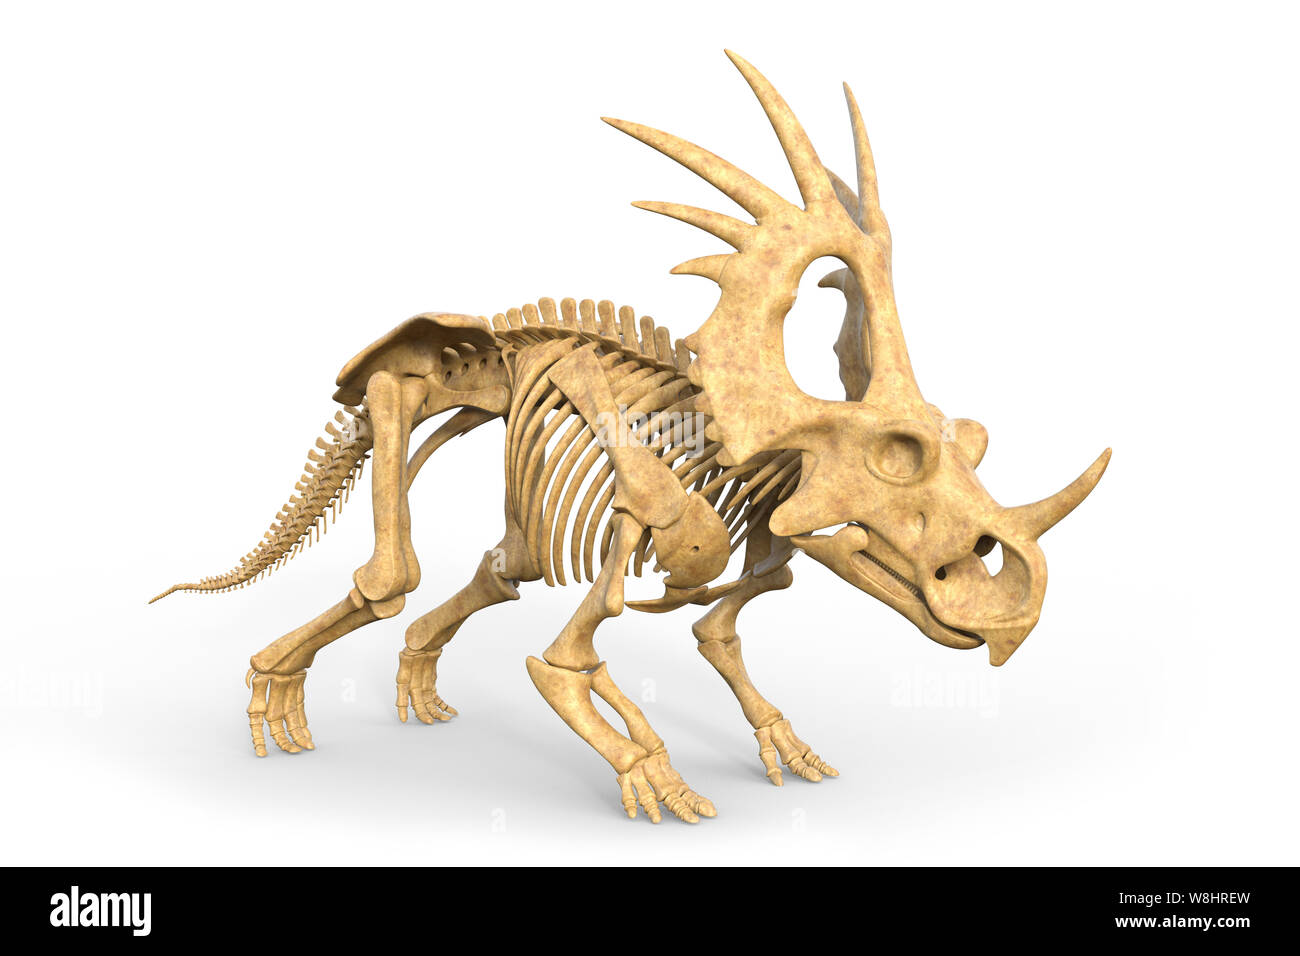 Dinosaurier Styracosaurus Skelettstruktur, Illustration. Diese Dinosaurier lebten während der Kreidezeit, ca. 76-75 Millionen Jahren. Stockfoto